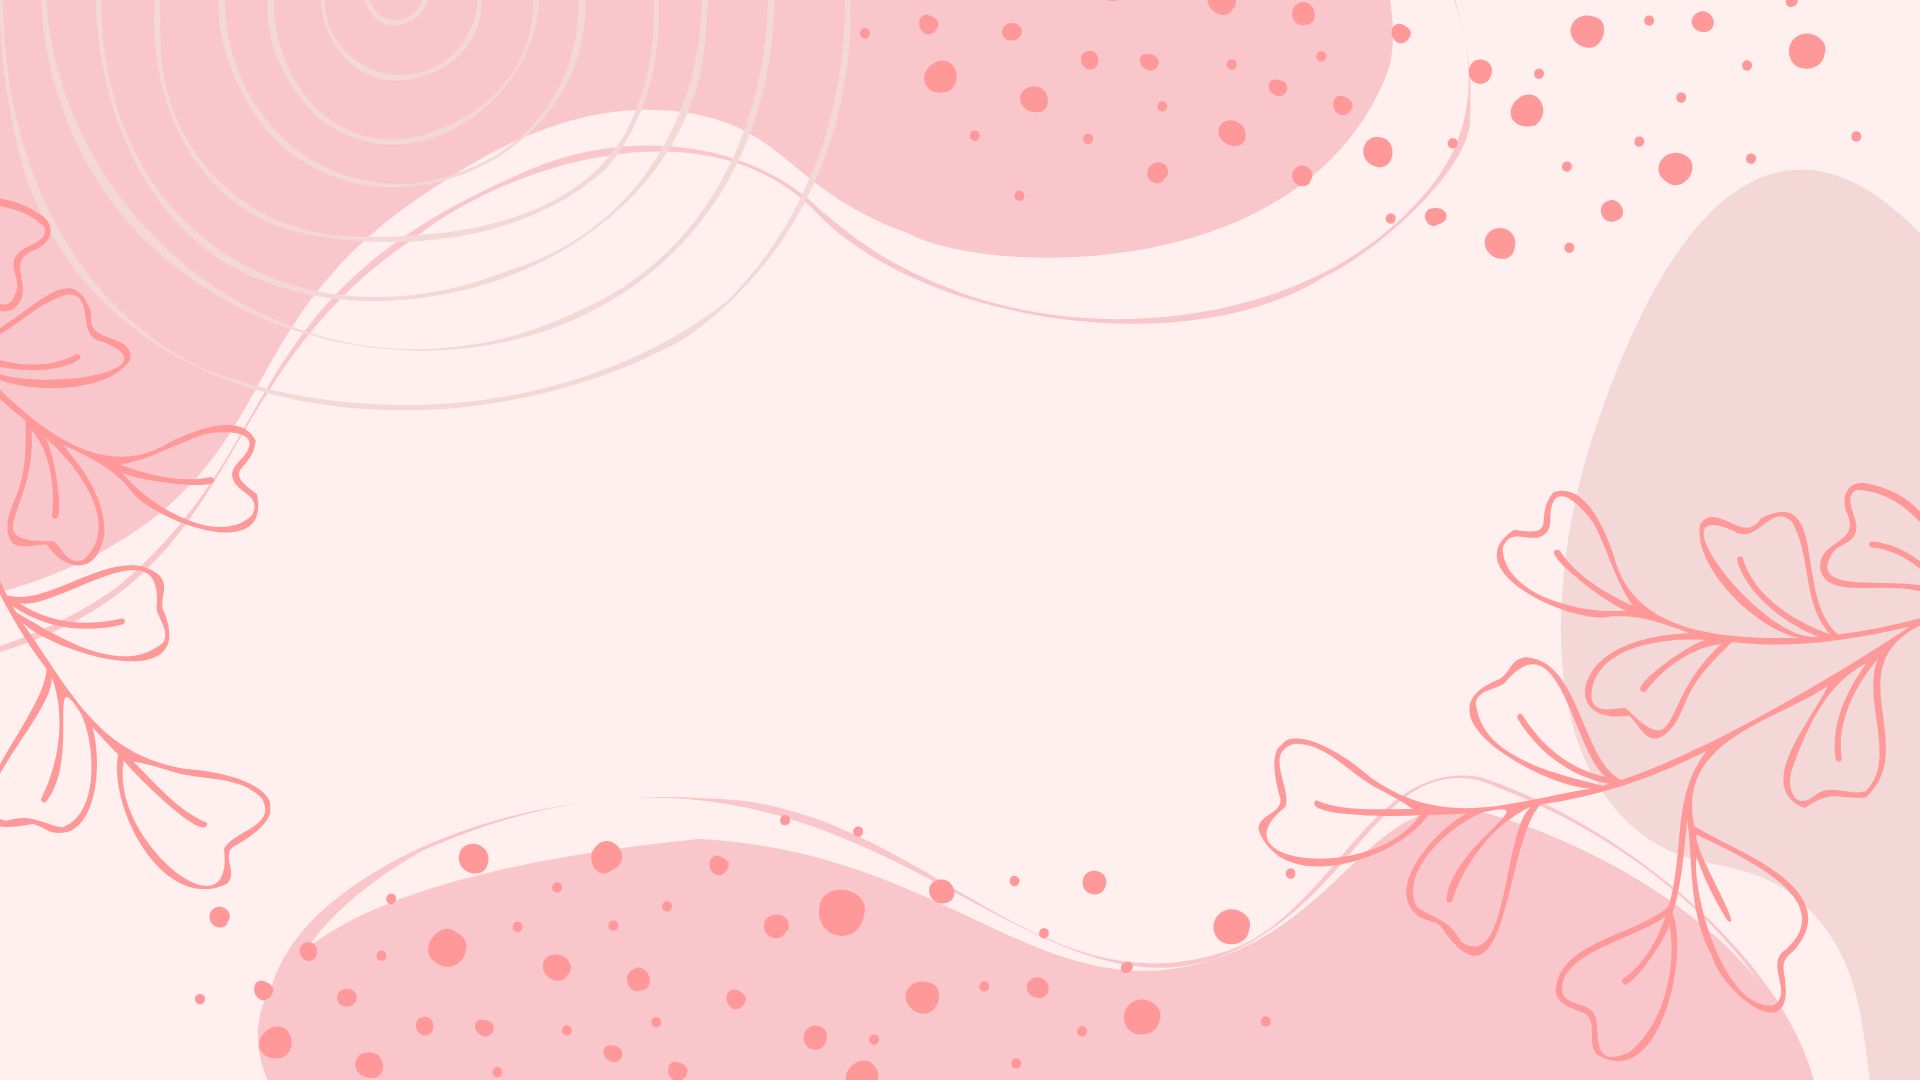 Pink Boho Background in Illustrator, EPS, SVG, JPG, PNG